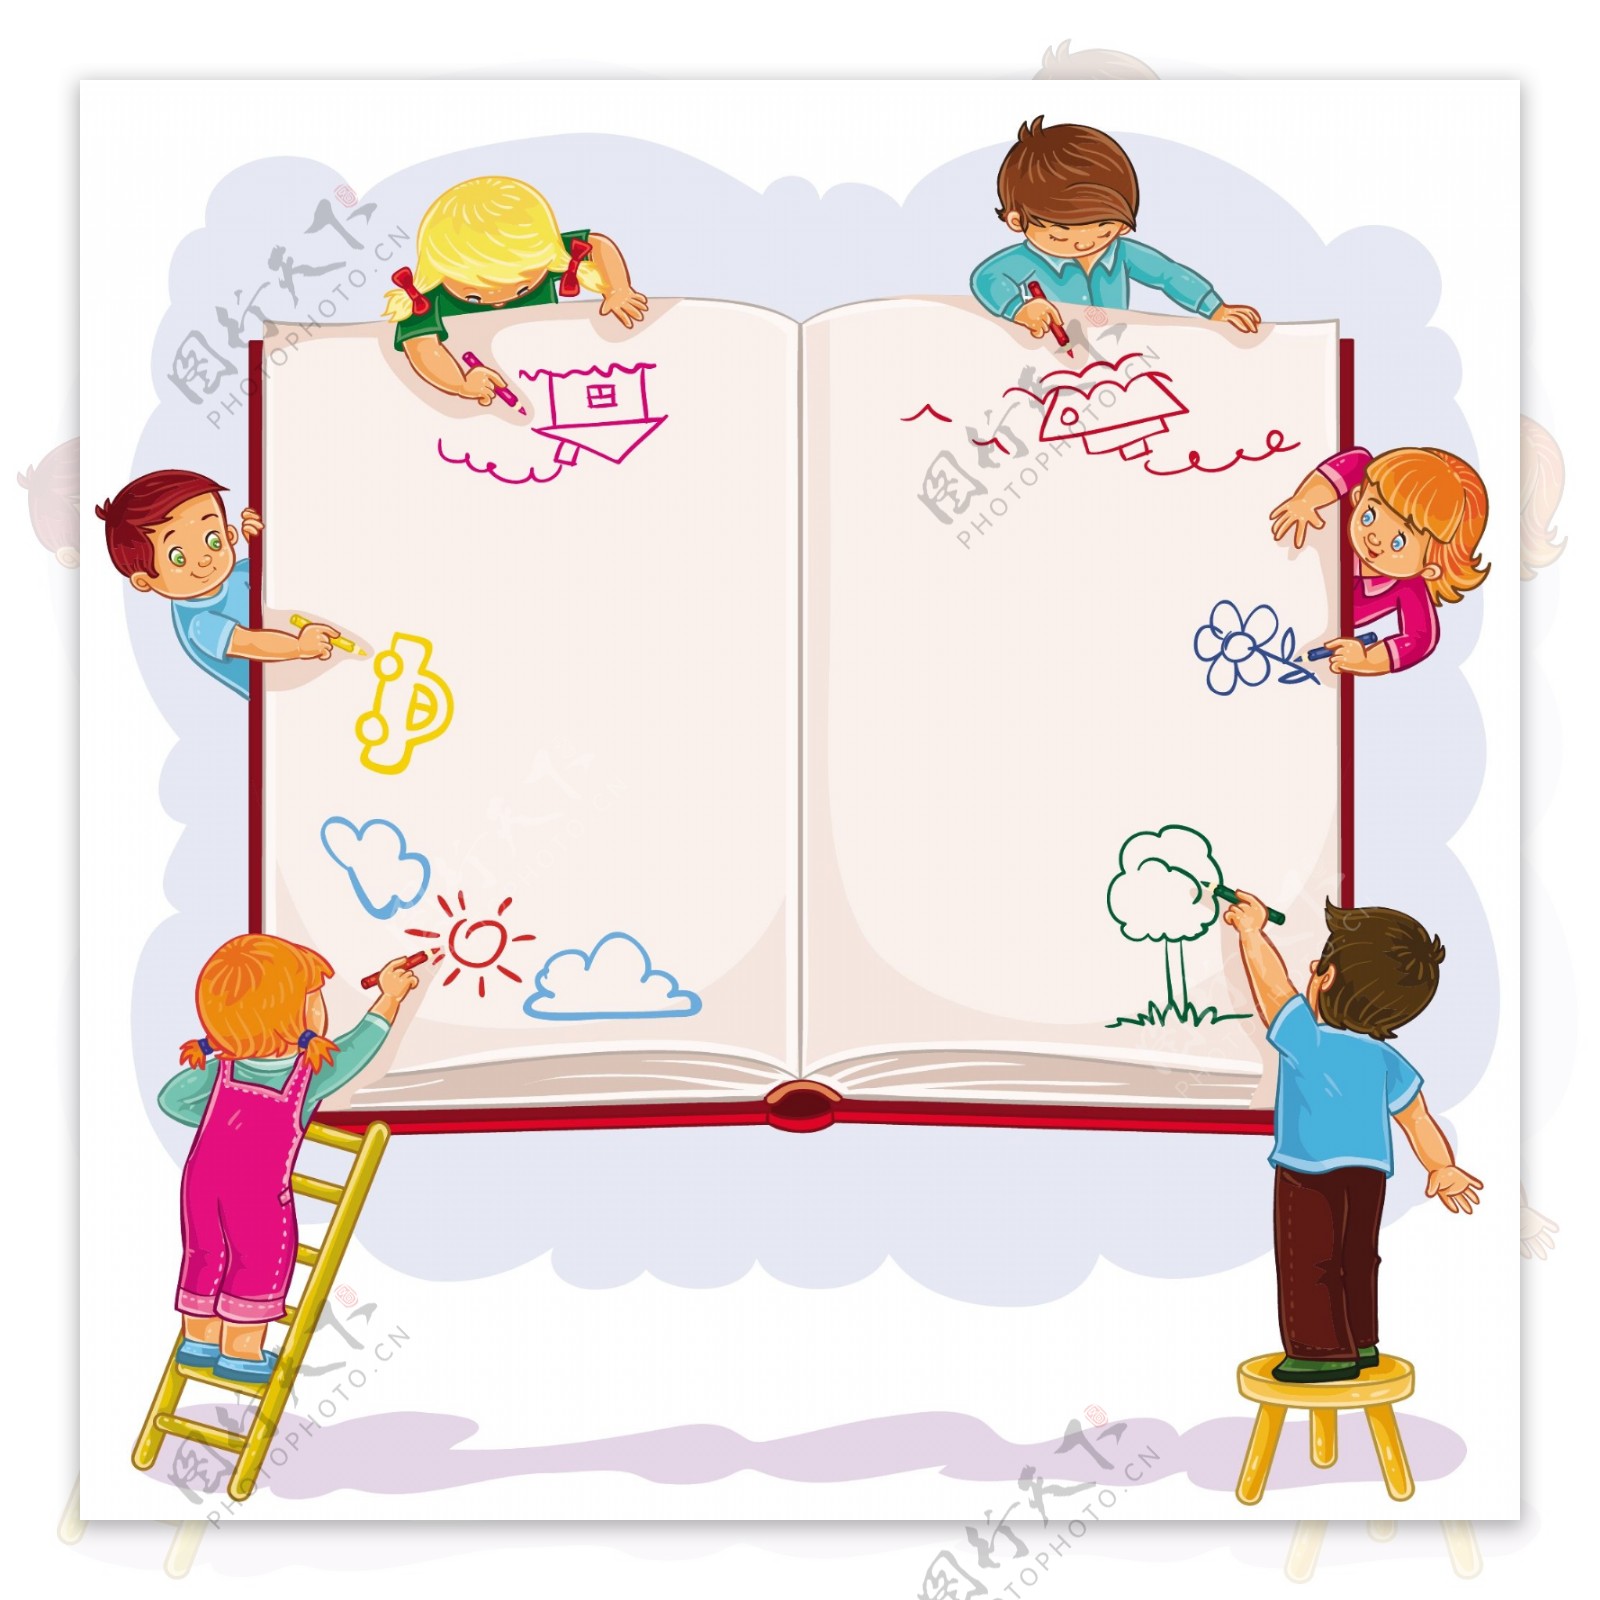 在一个大的纸本上画的孩子们快乐的在一起